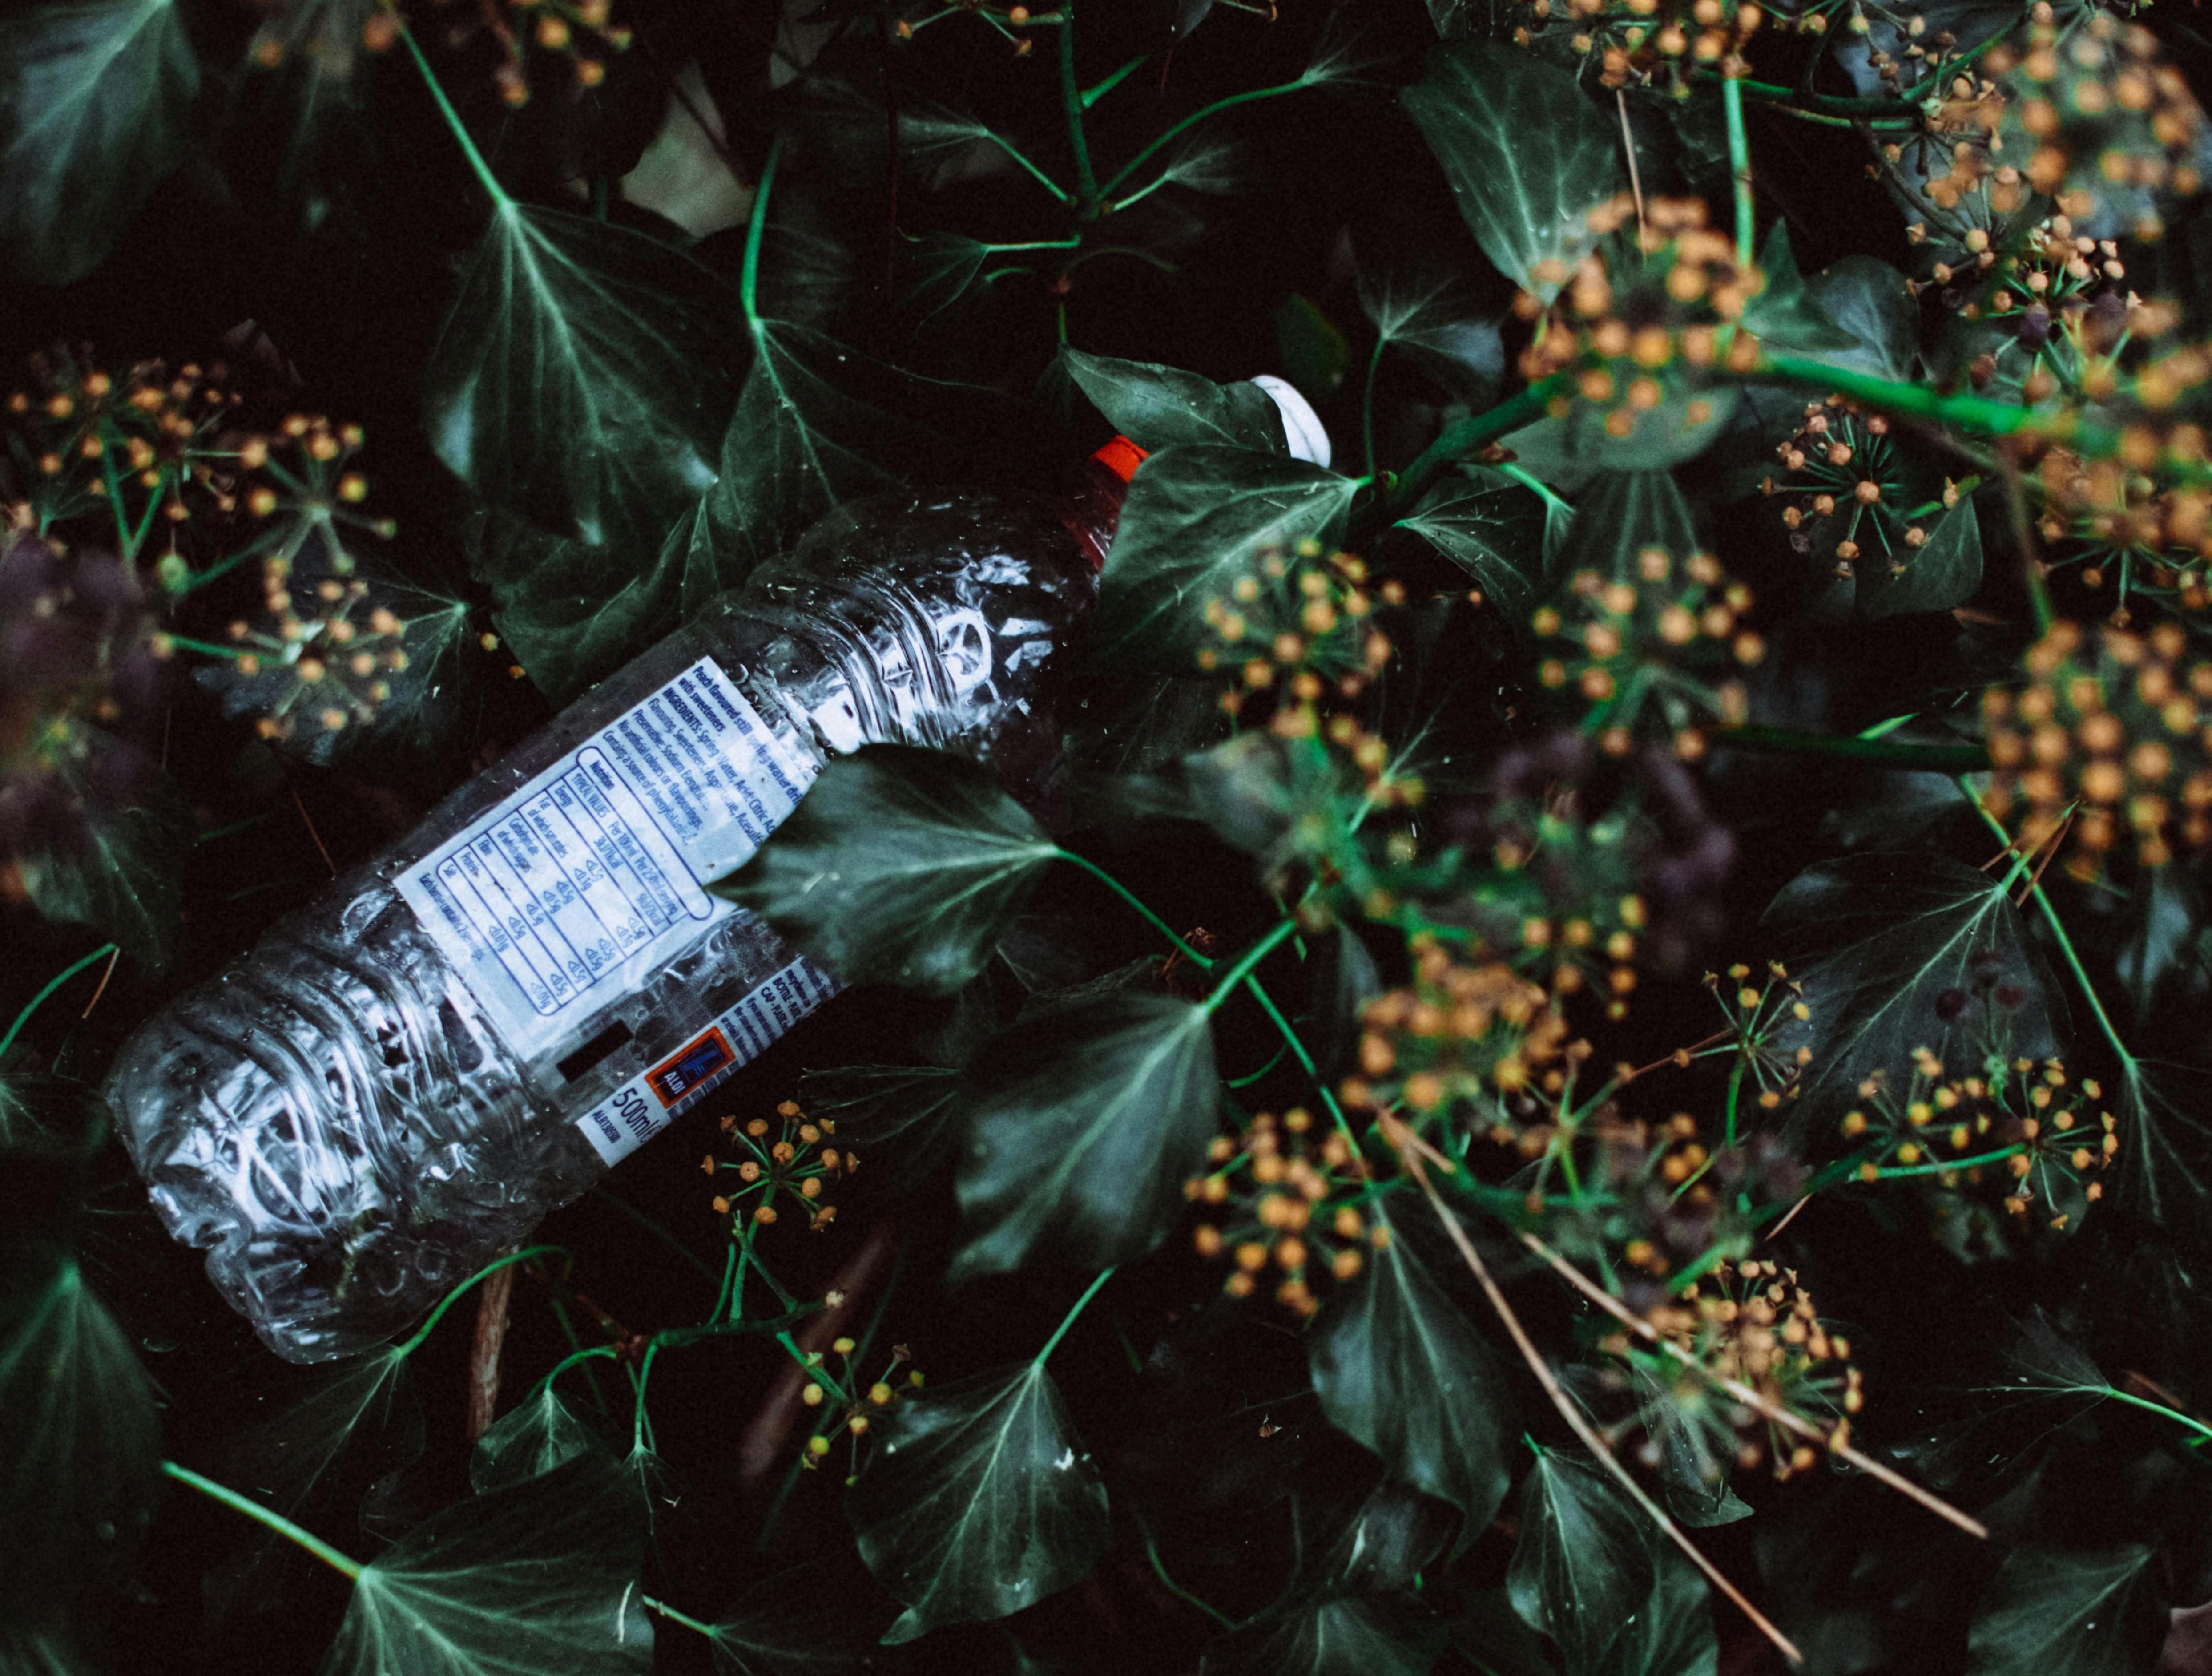 草叢中靜靜地躺著一個被丟棄的保特瓶，可以知道塑膠對環境有害，那香水中添加的塑化劑是否也會對人體有害呢？